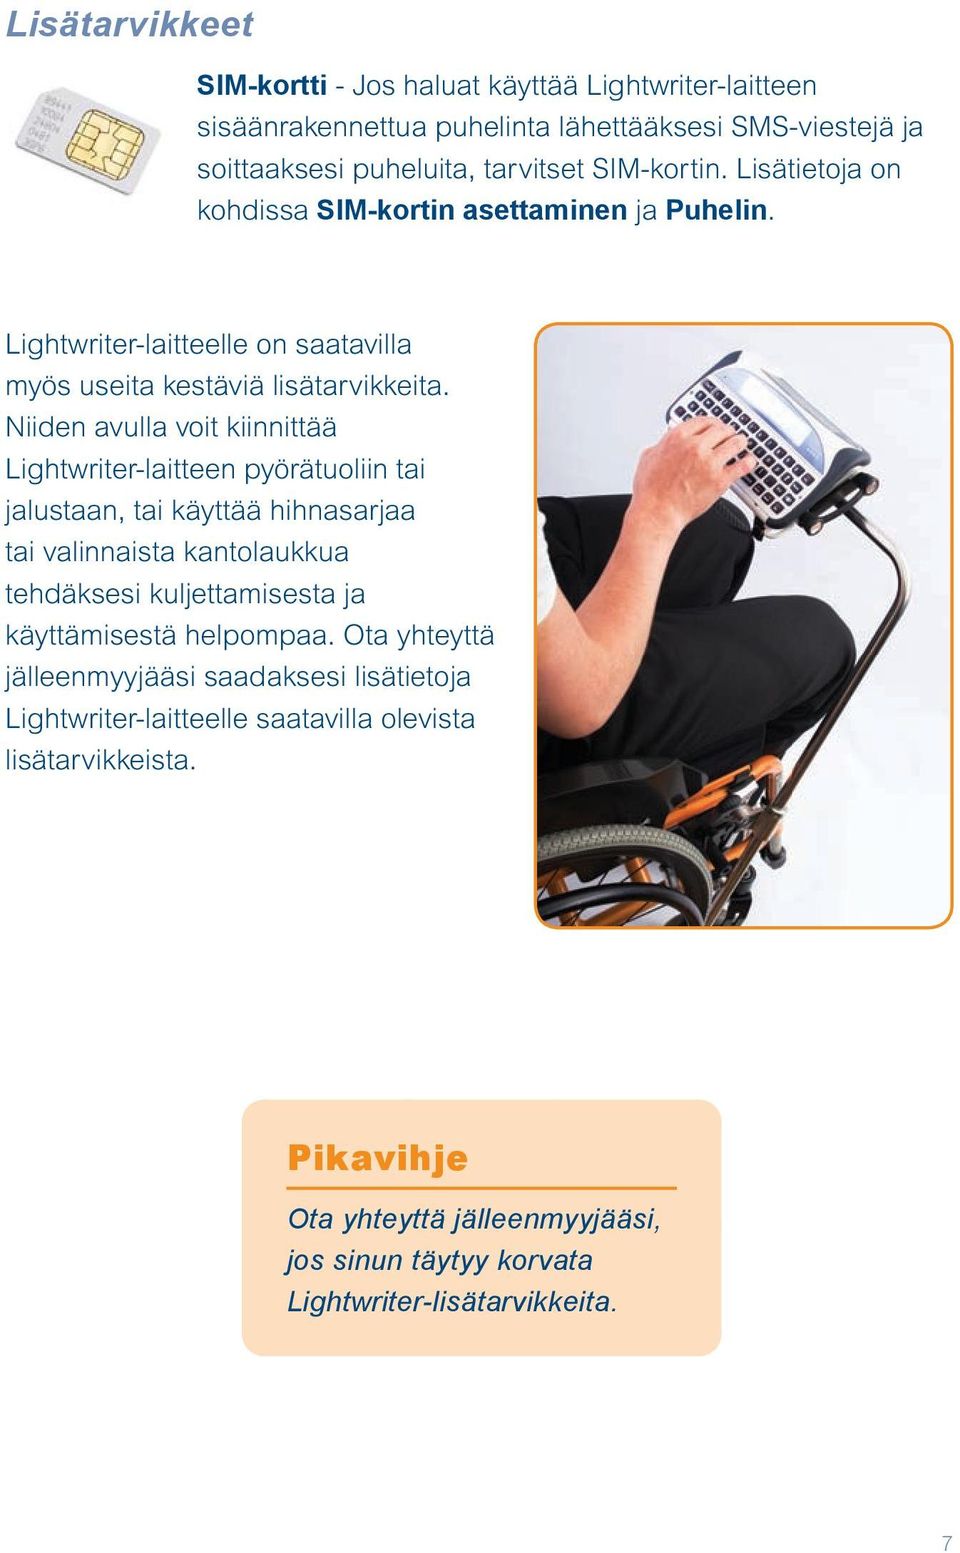 Niiden avulla voit kiinnittää Lightwriter-laitteen pyörätuoliin tai jalustaan, tai käyttää hihnasarjaa tai valinnaista kantolaukkua tehdäksesi kuljettamisesta ja käyttämisestä